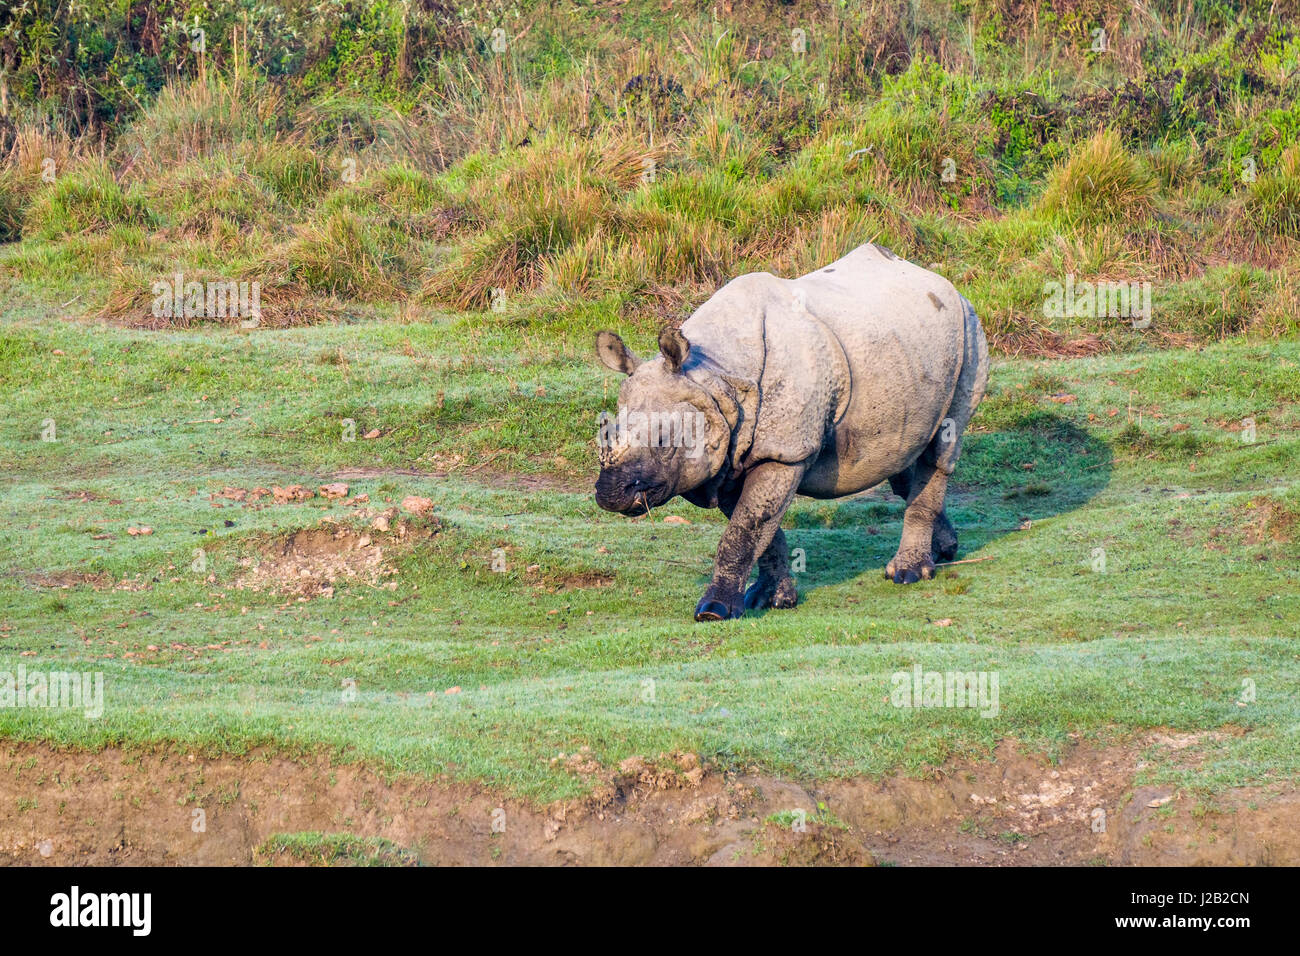 Un rhinocéros à une corne, indien (Rhinoceros unicornis) marche dans le parc national de Chitwan Banque D'Images